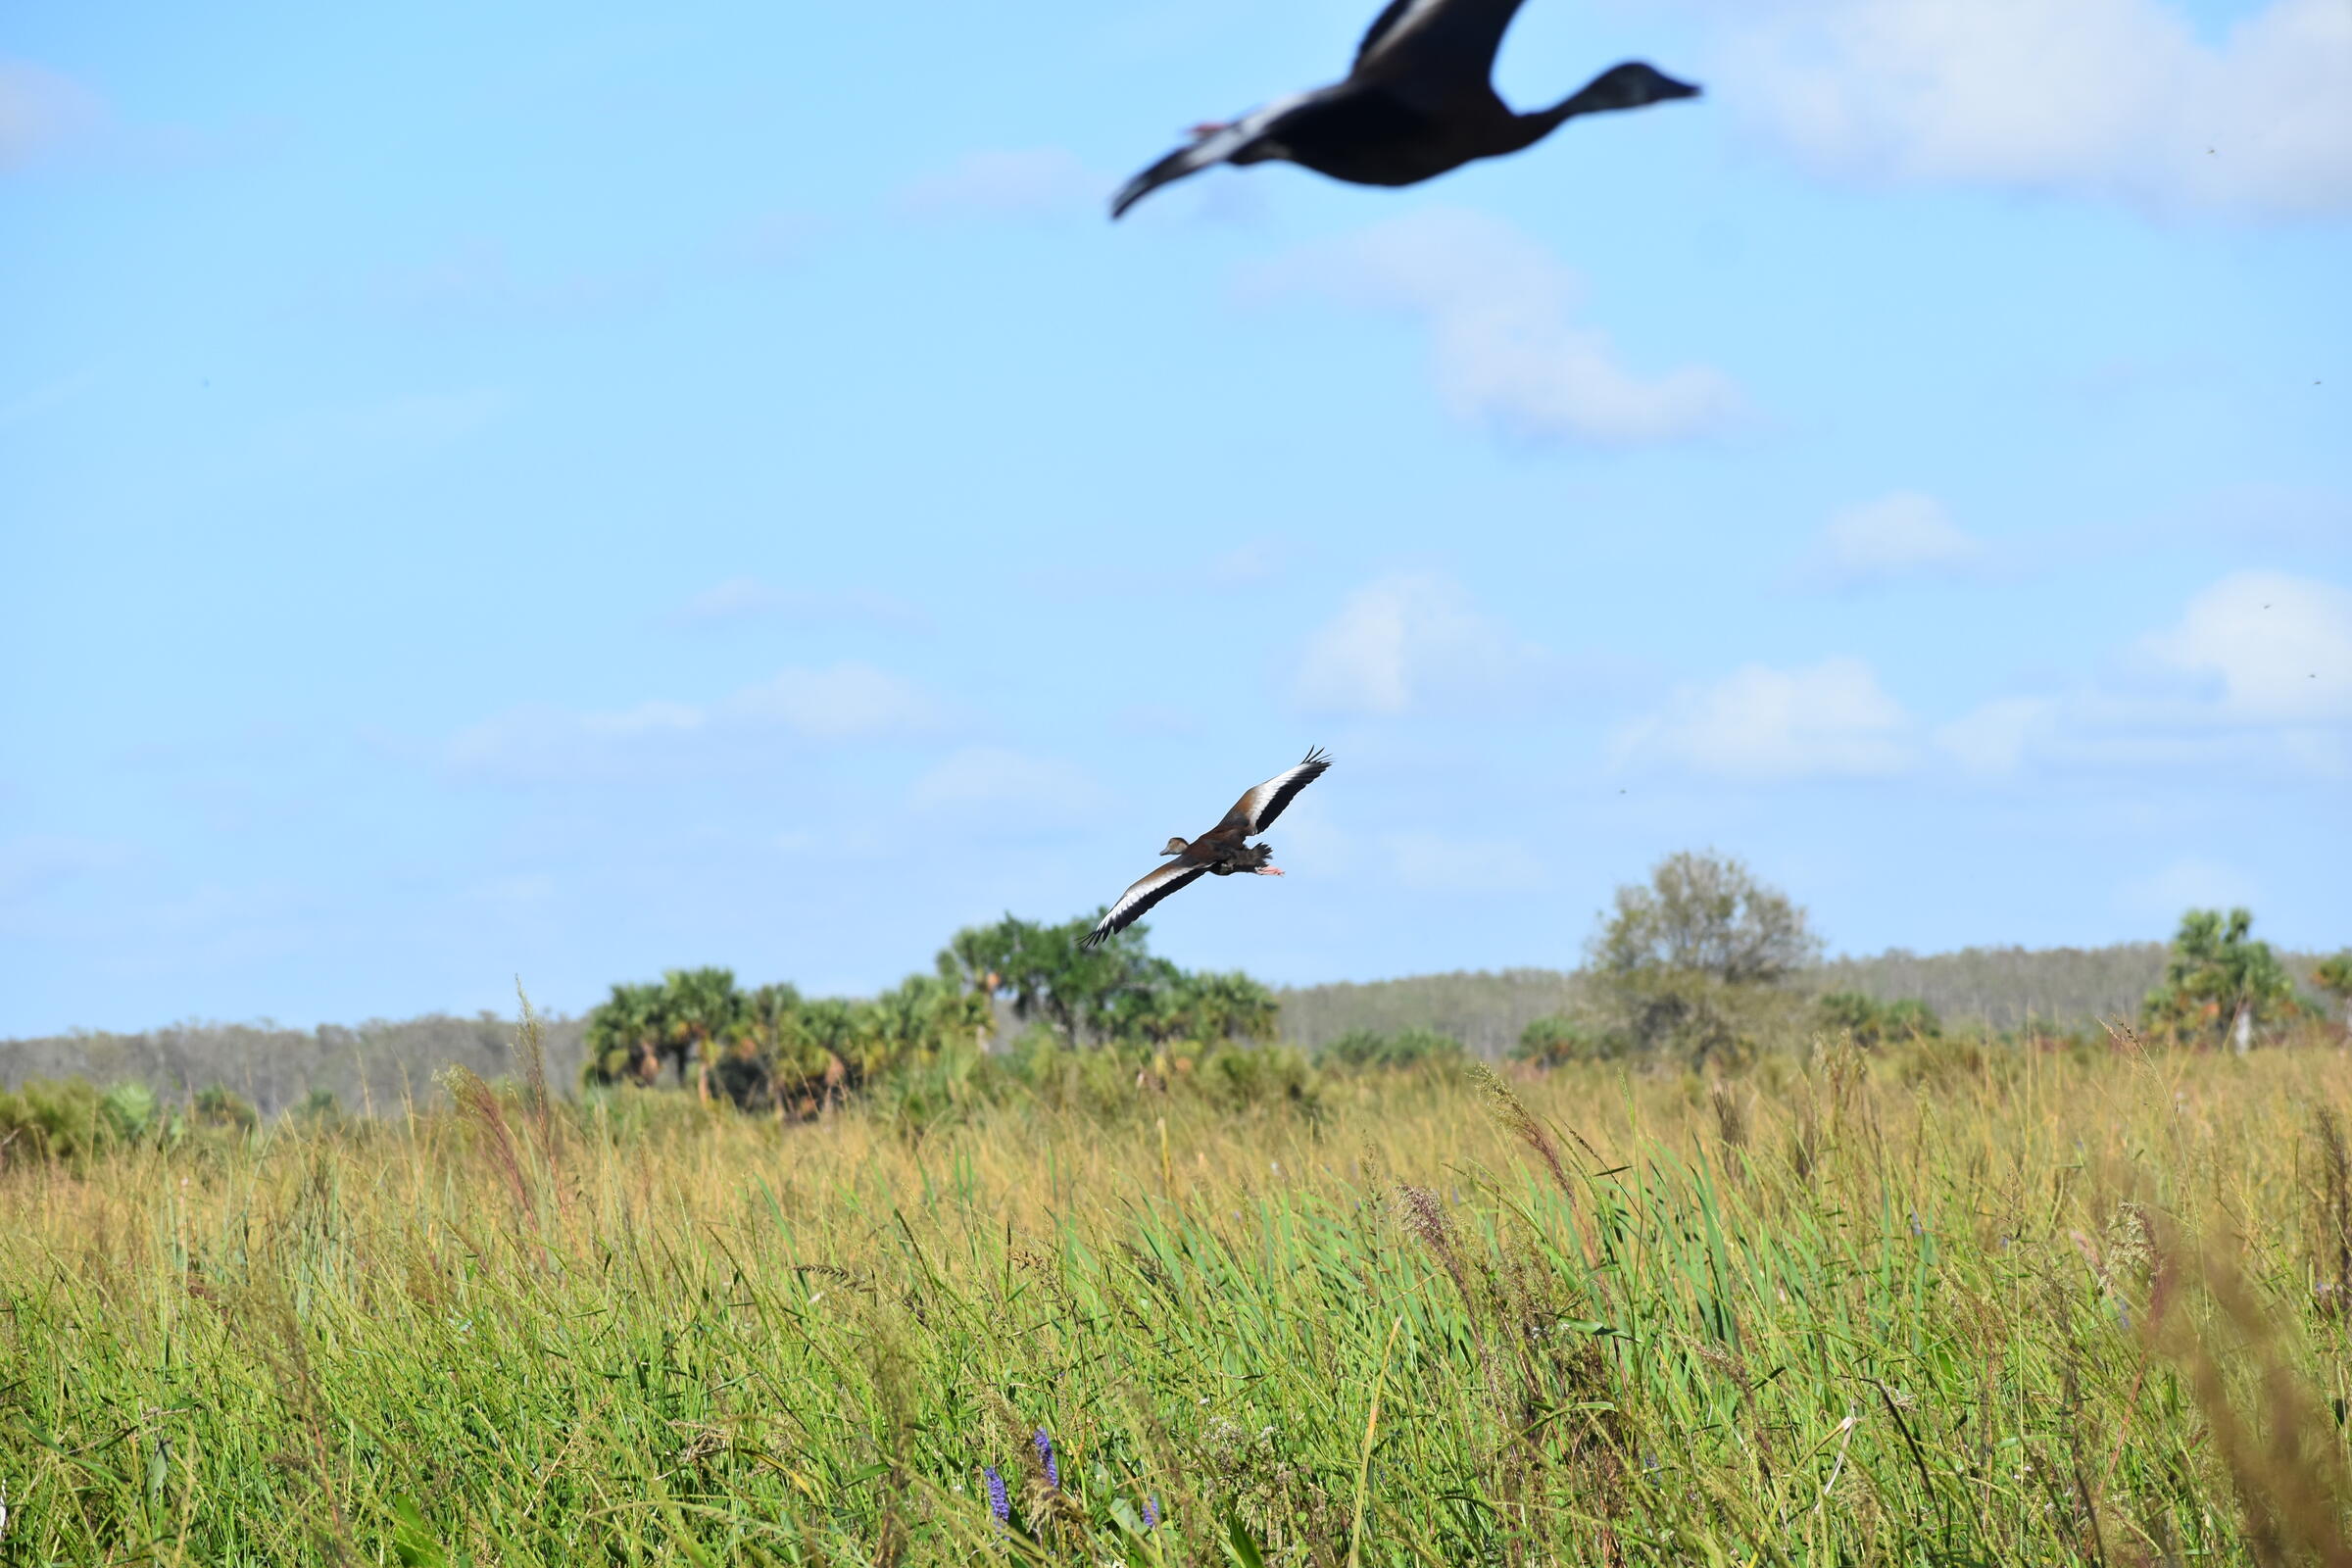 Ducks in flight over a wetland